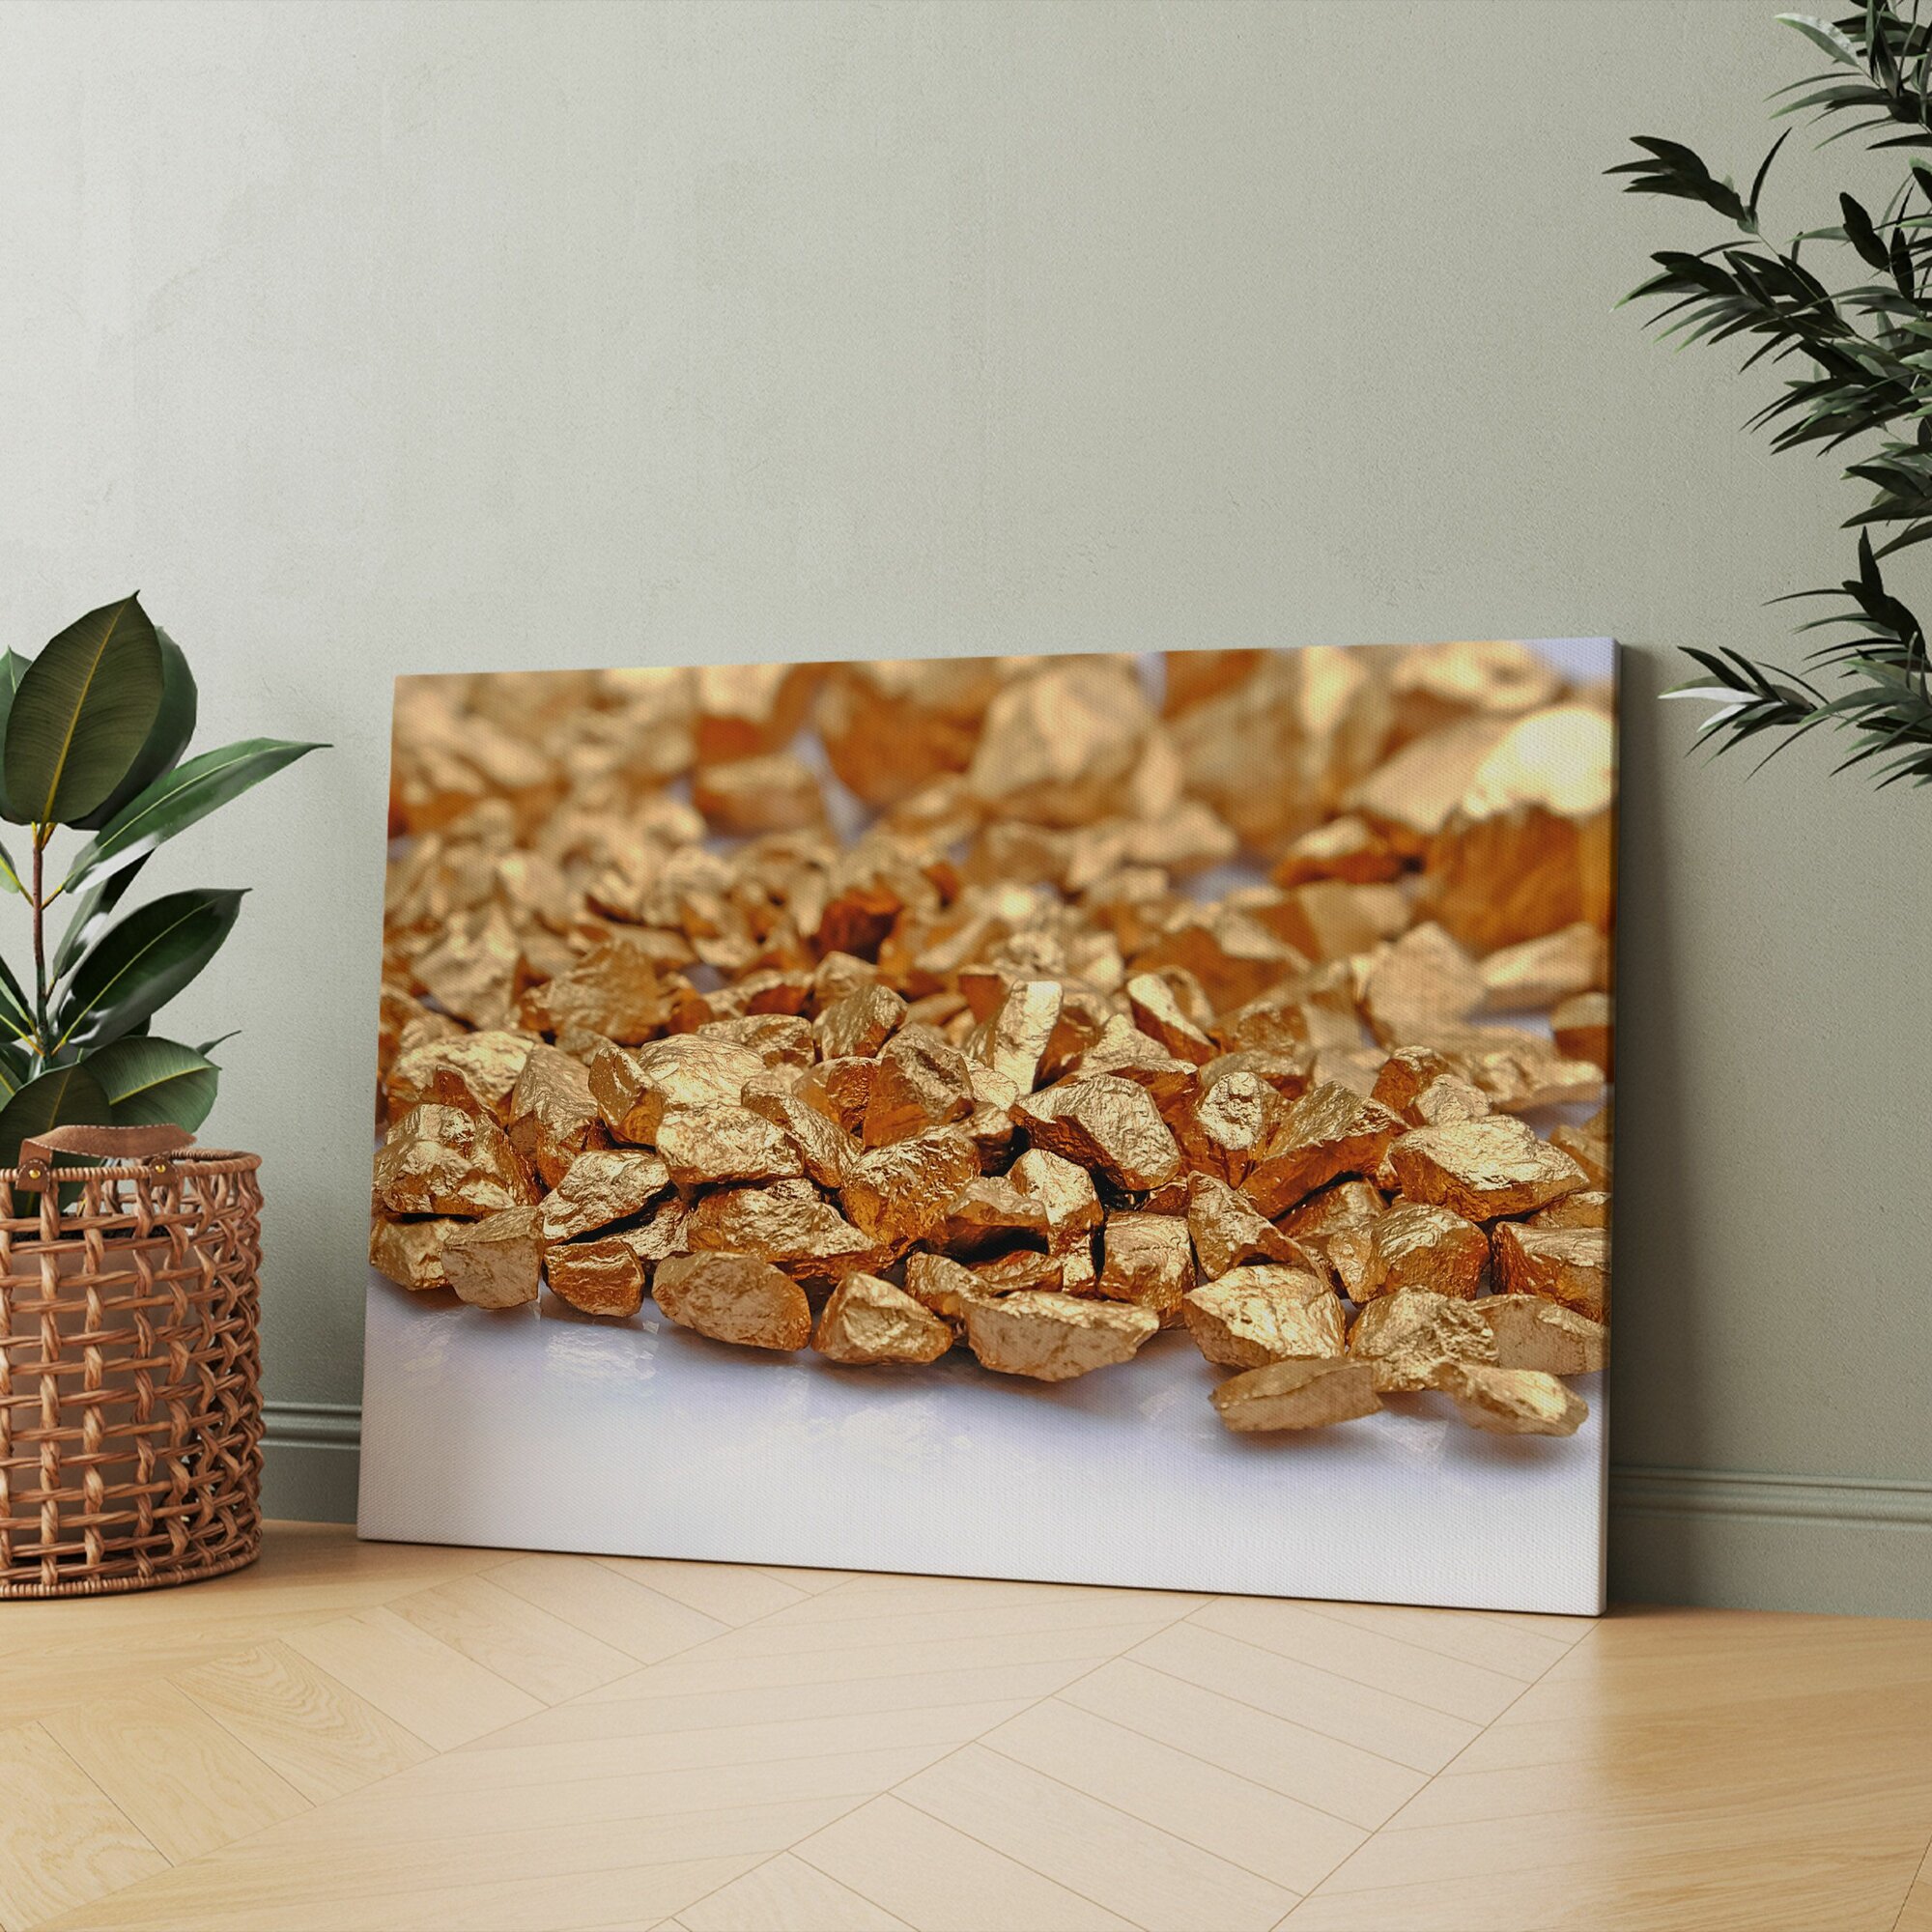 Картина на холсте "Куча золотых самородков на белой поверхности" 40x60 см. Интерьерная, на стену.